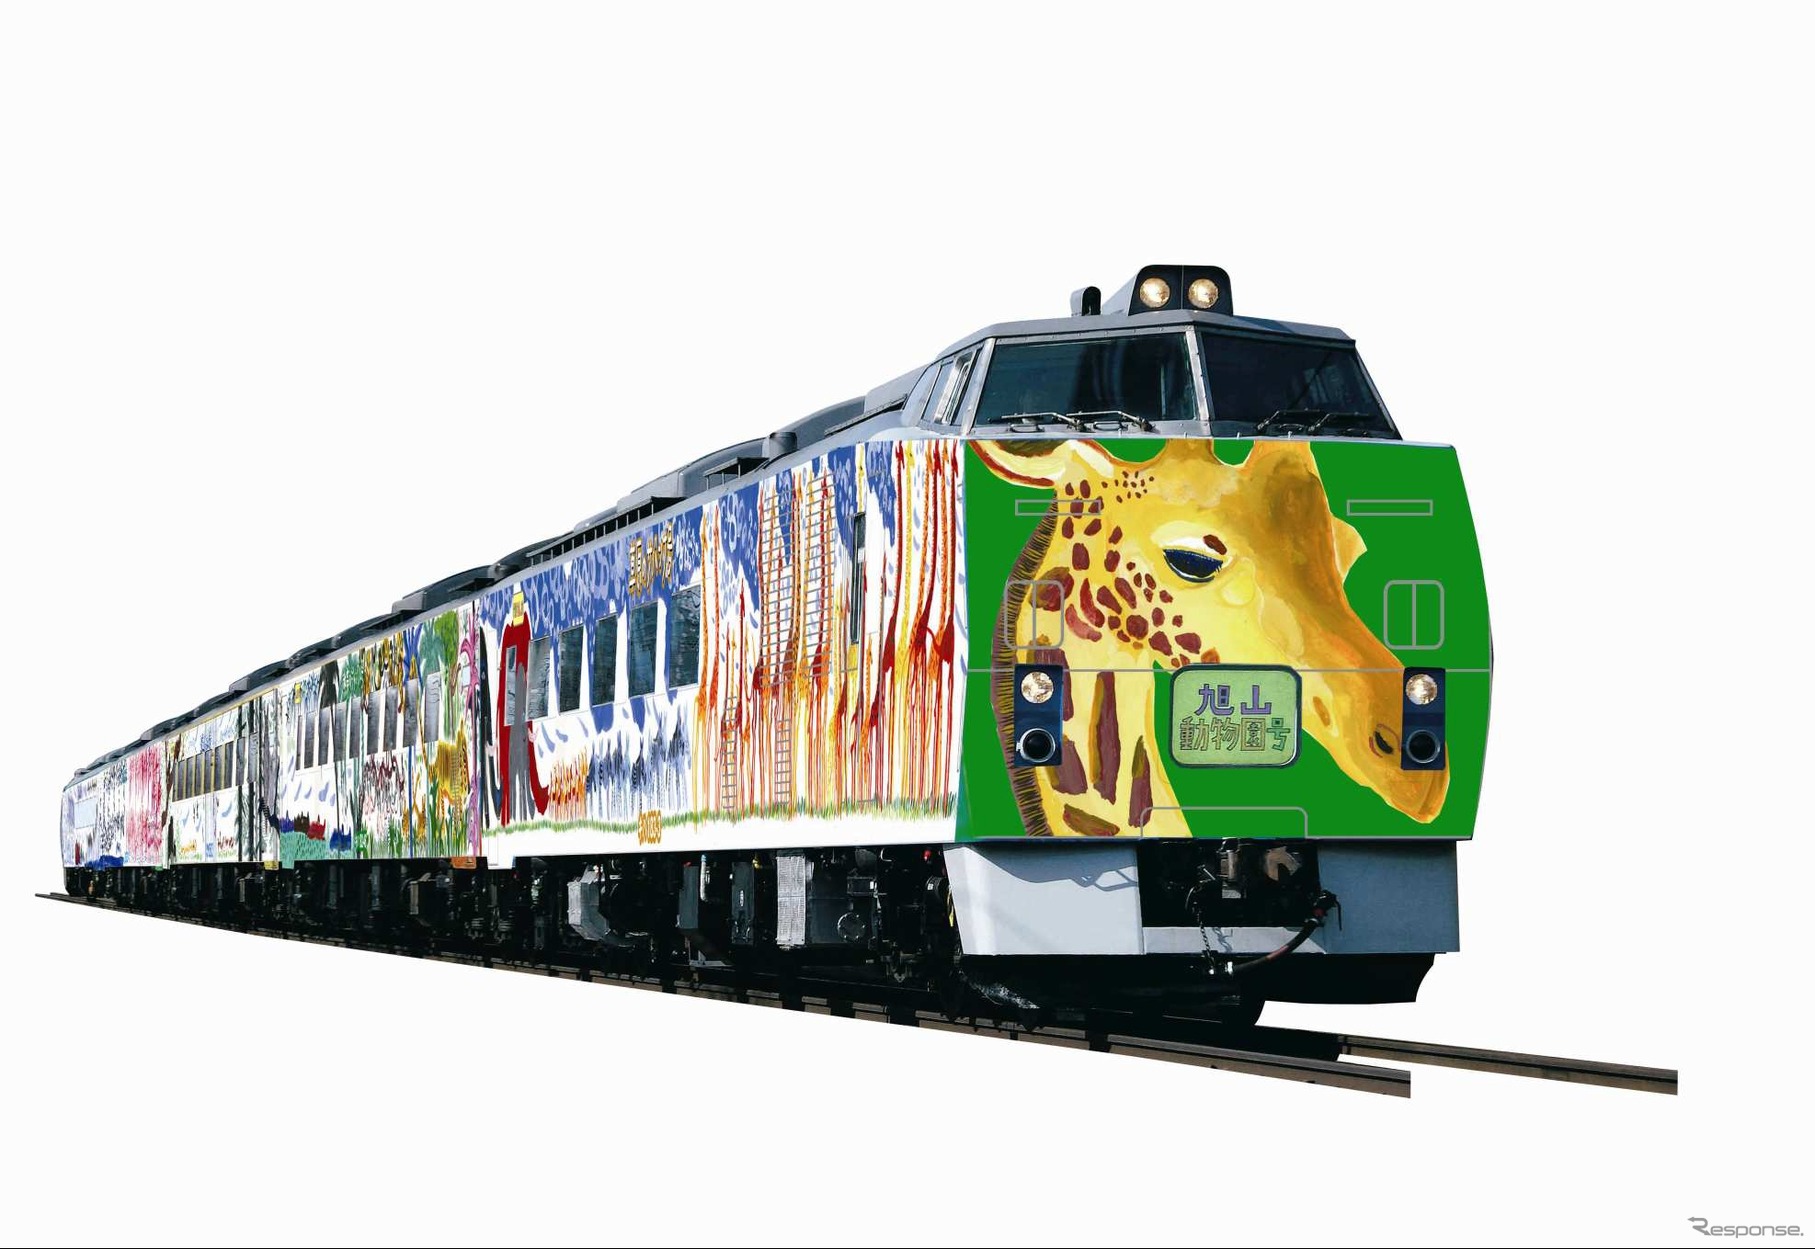 JR北海道は秋の臨時列車として、写真の『旭山動物園号』など特急も各種運転する